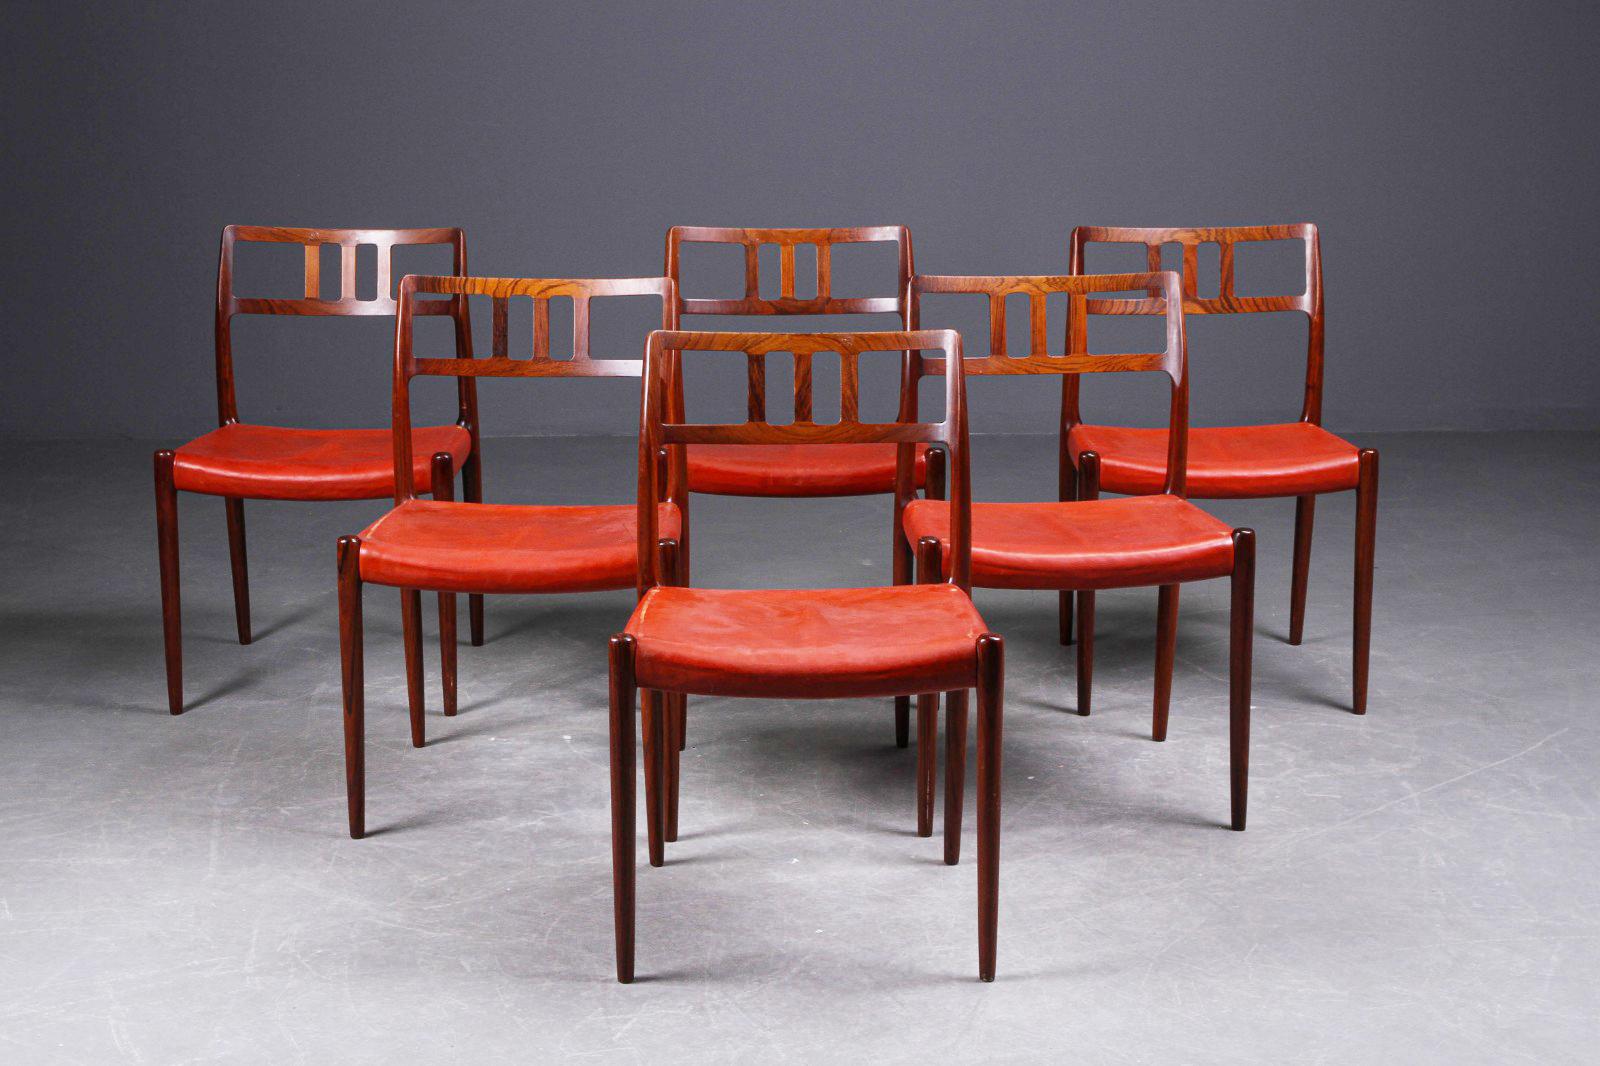 Rarissime ensemble de 6 chaises de salle à manger modèle 79 conçu en 1966 par Niels O. Møller et produit par I.L Møllers møbelfabrik au Danemark.
Cadre en bois dur avec un revêtement en cuir, qui peut être changé gratuitement pour une autre couleur